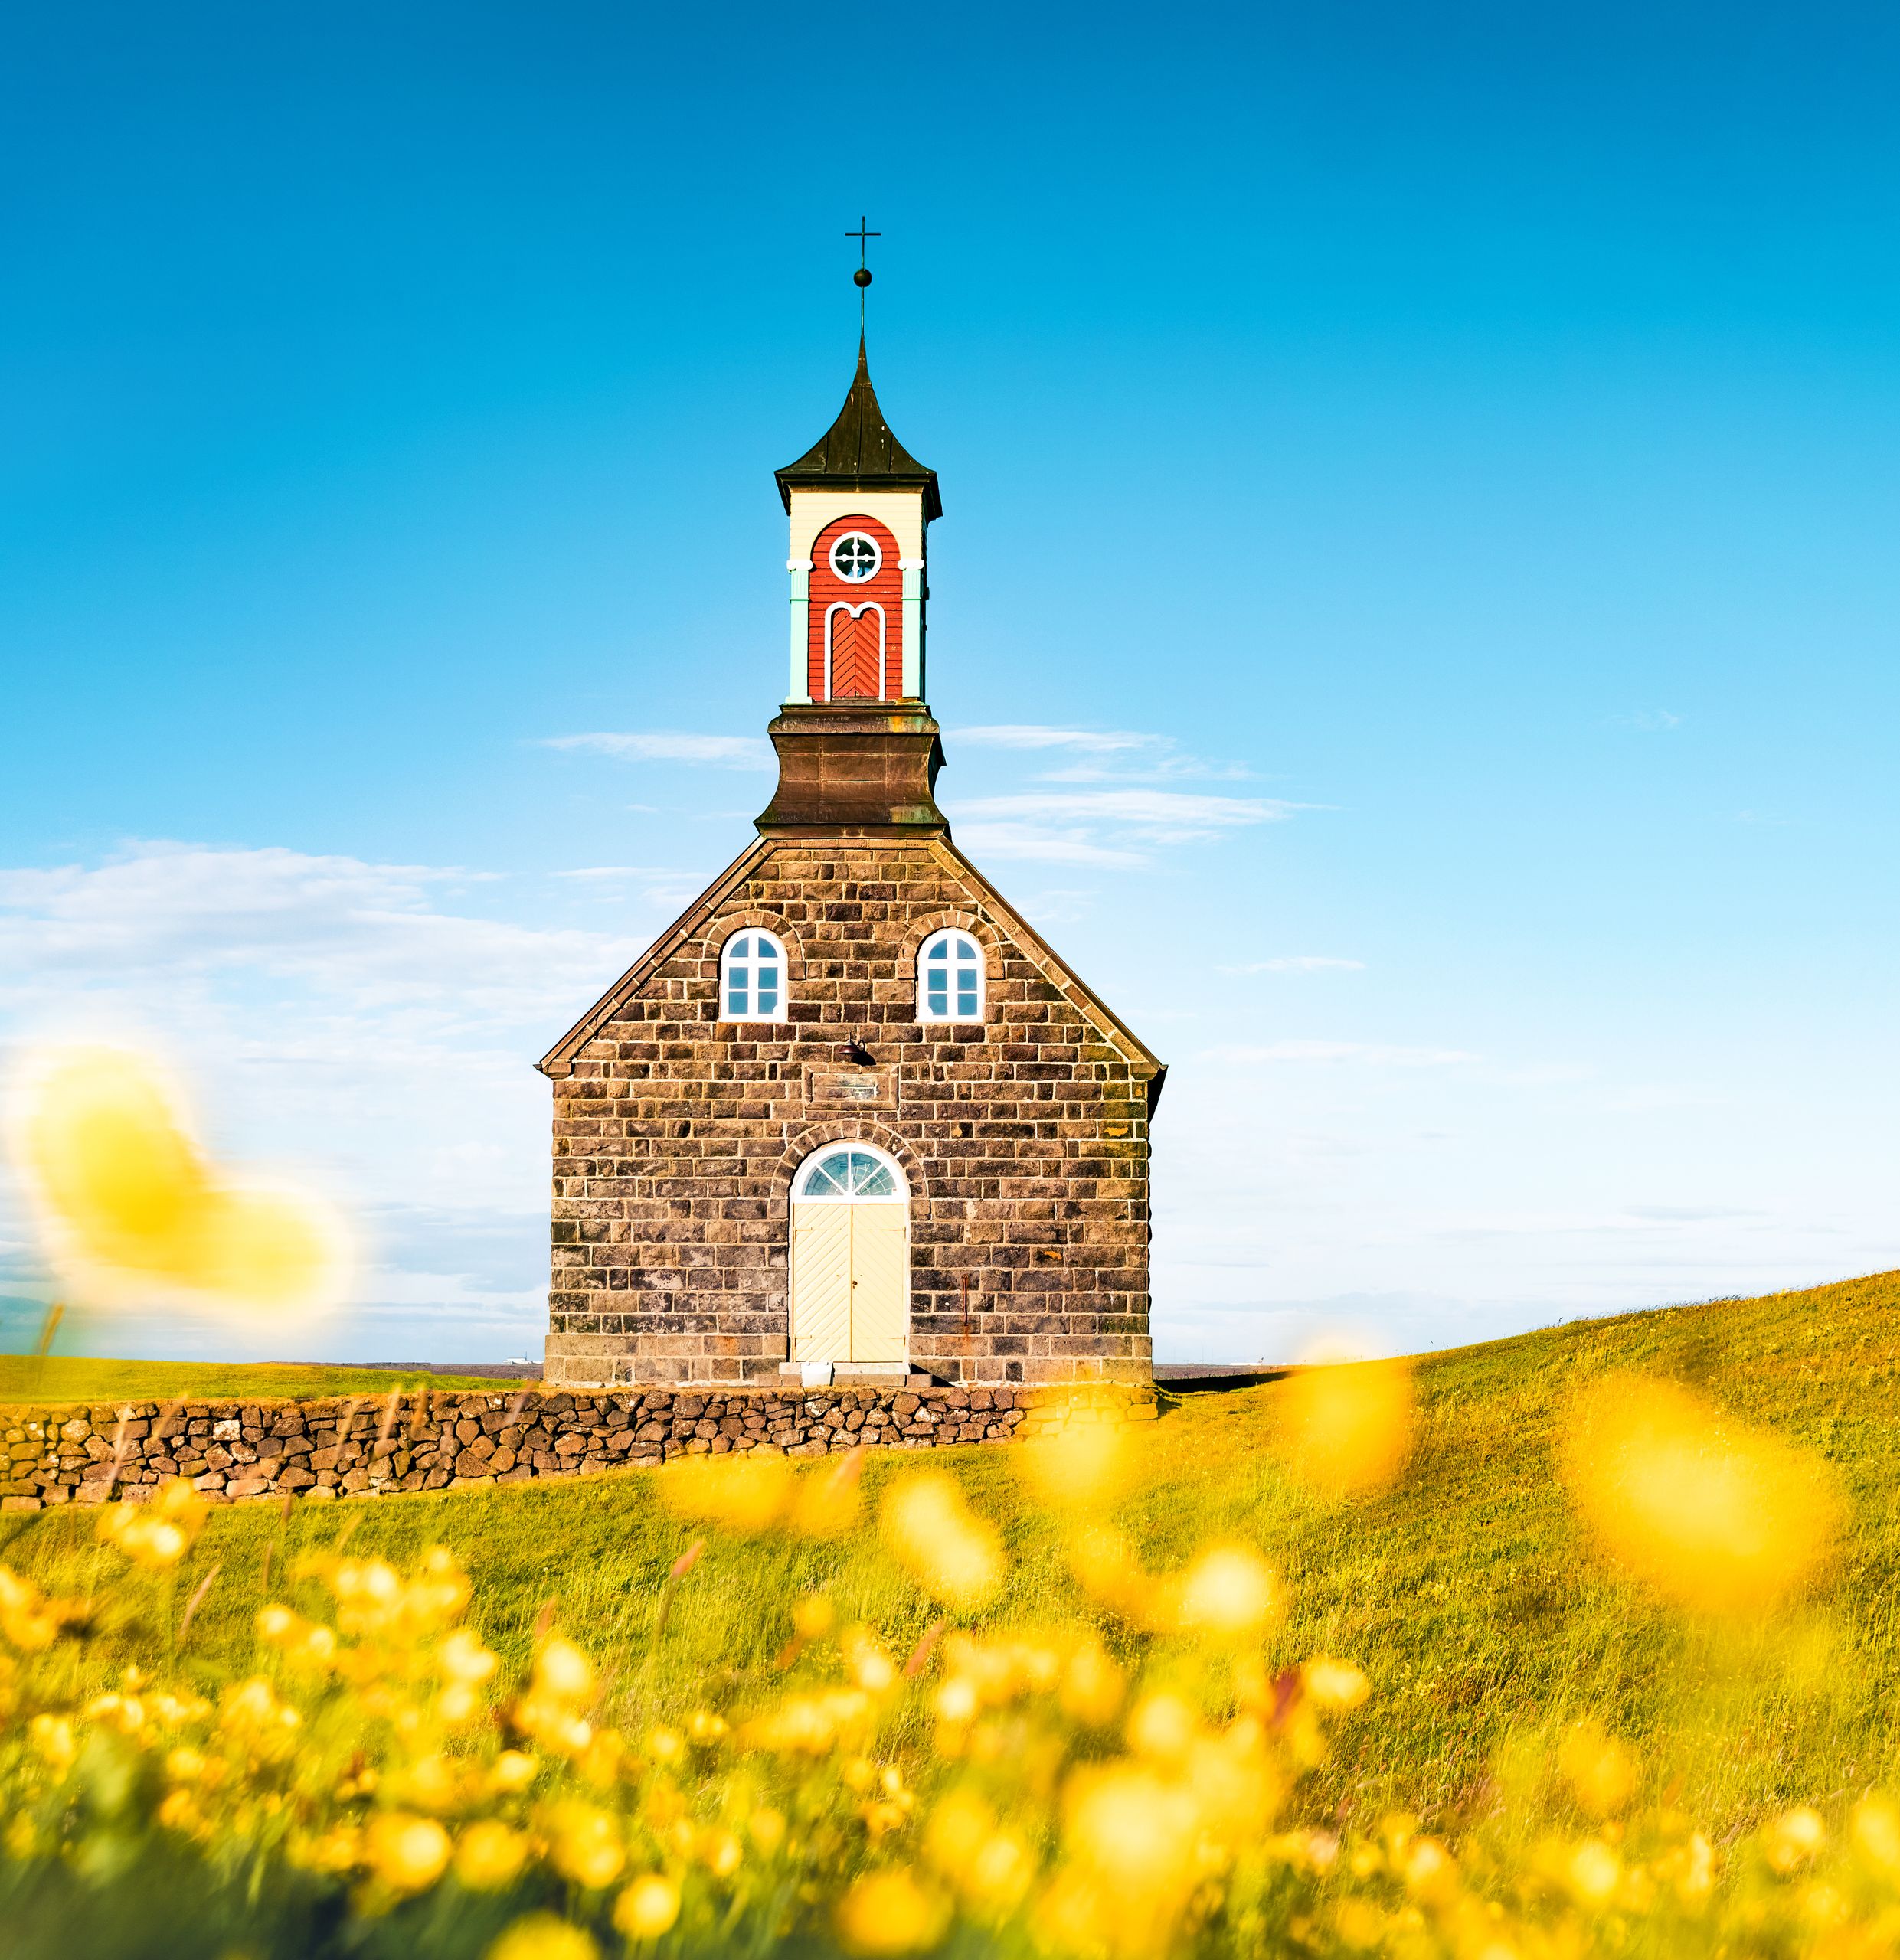 Bright morning view of Hvalsneskirkja church among blooming yellow flowers. Splendid summer scene of Iceland